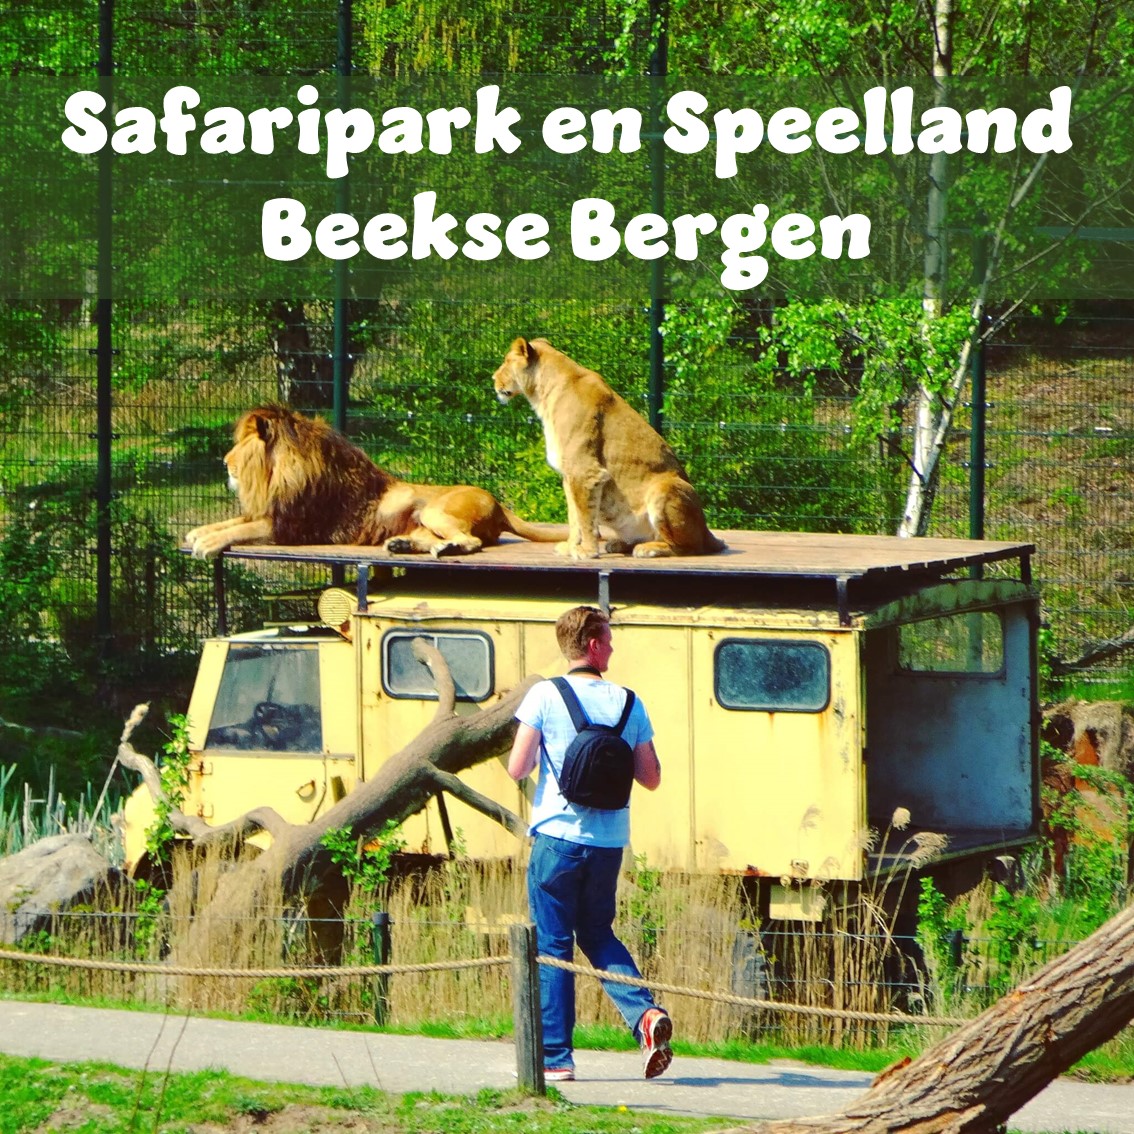 Safaripark Beekse Bergen en het Speelland: leuk met kinderen. Op zoek naar een leuk uitje in Brabant? Wij vonden Safaripark Beekse Bergen erg leuk. En het vlakbij gelegen Speelland Beekse Bergen is ook tof op een mooie dag. Daarom vind je hier een review van Safaripark Beekse Bergen en het Speelland Beekse Bergen.